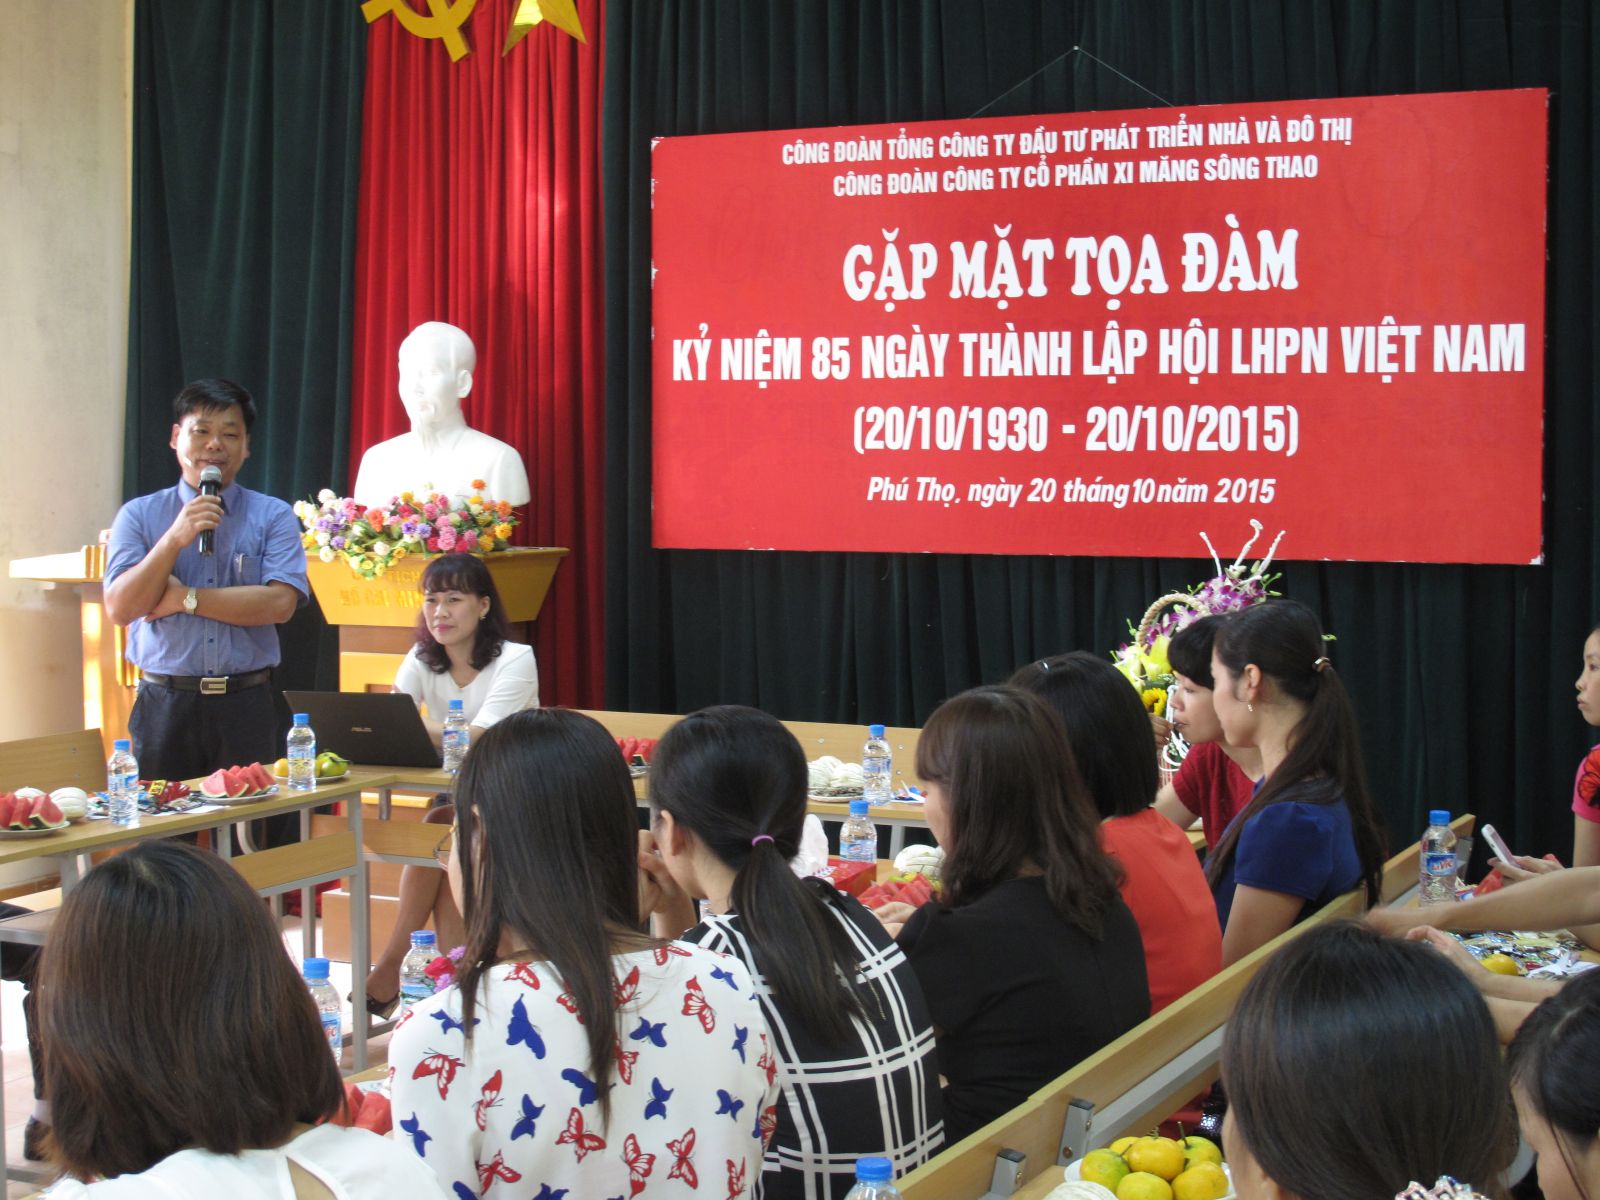 Gặp mặt tọa đàm nữ CBCNV nhân kỷ niệm 85 năm thành lập Hội LHPN Việt Nam